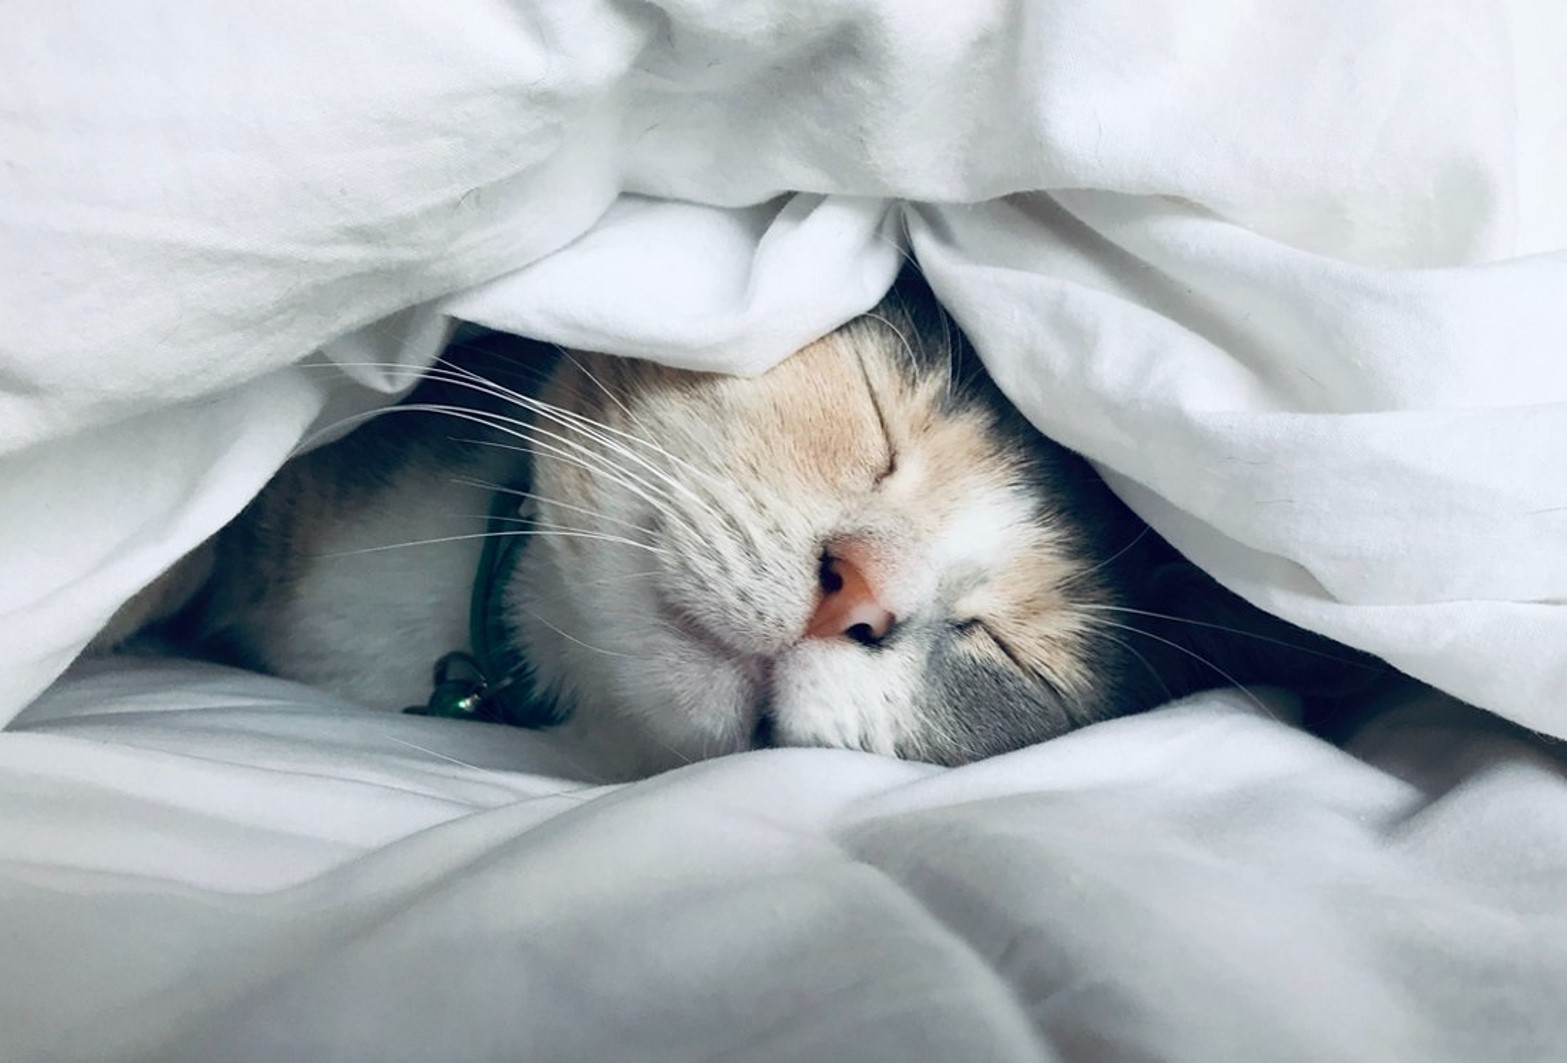 Cat sleeping in-between bed sheets.